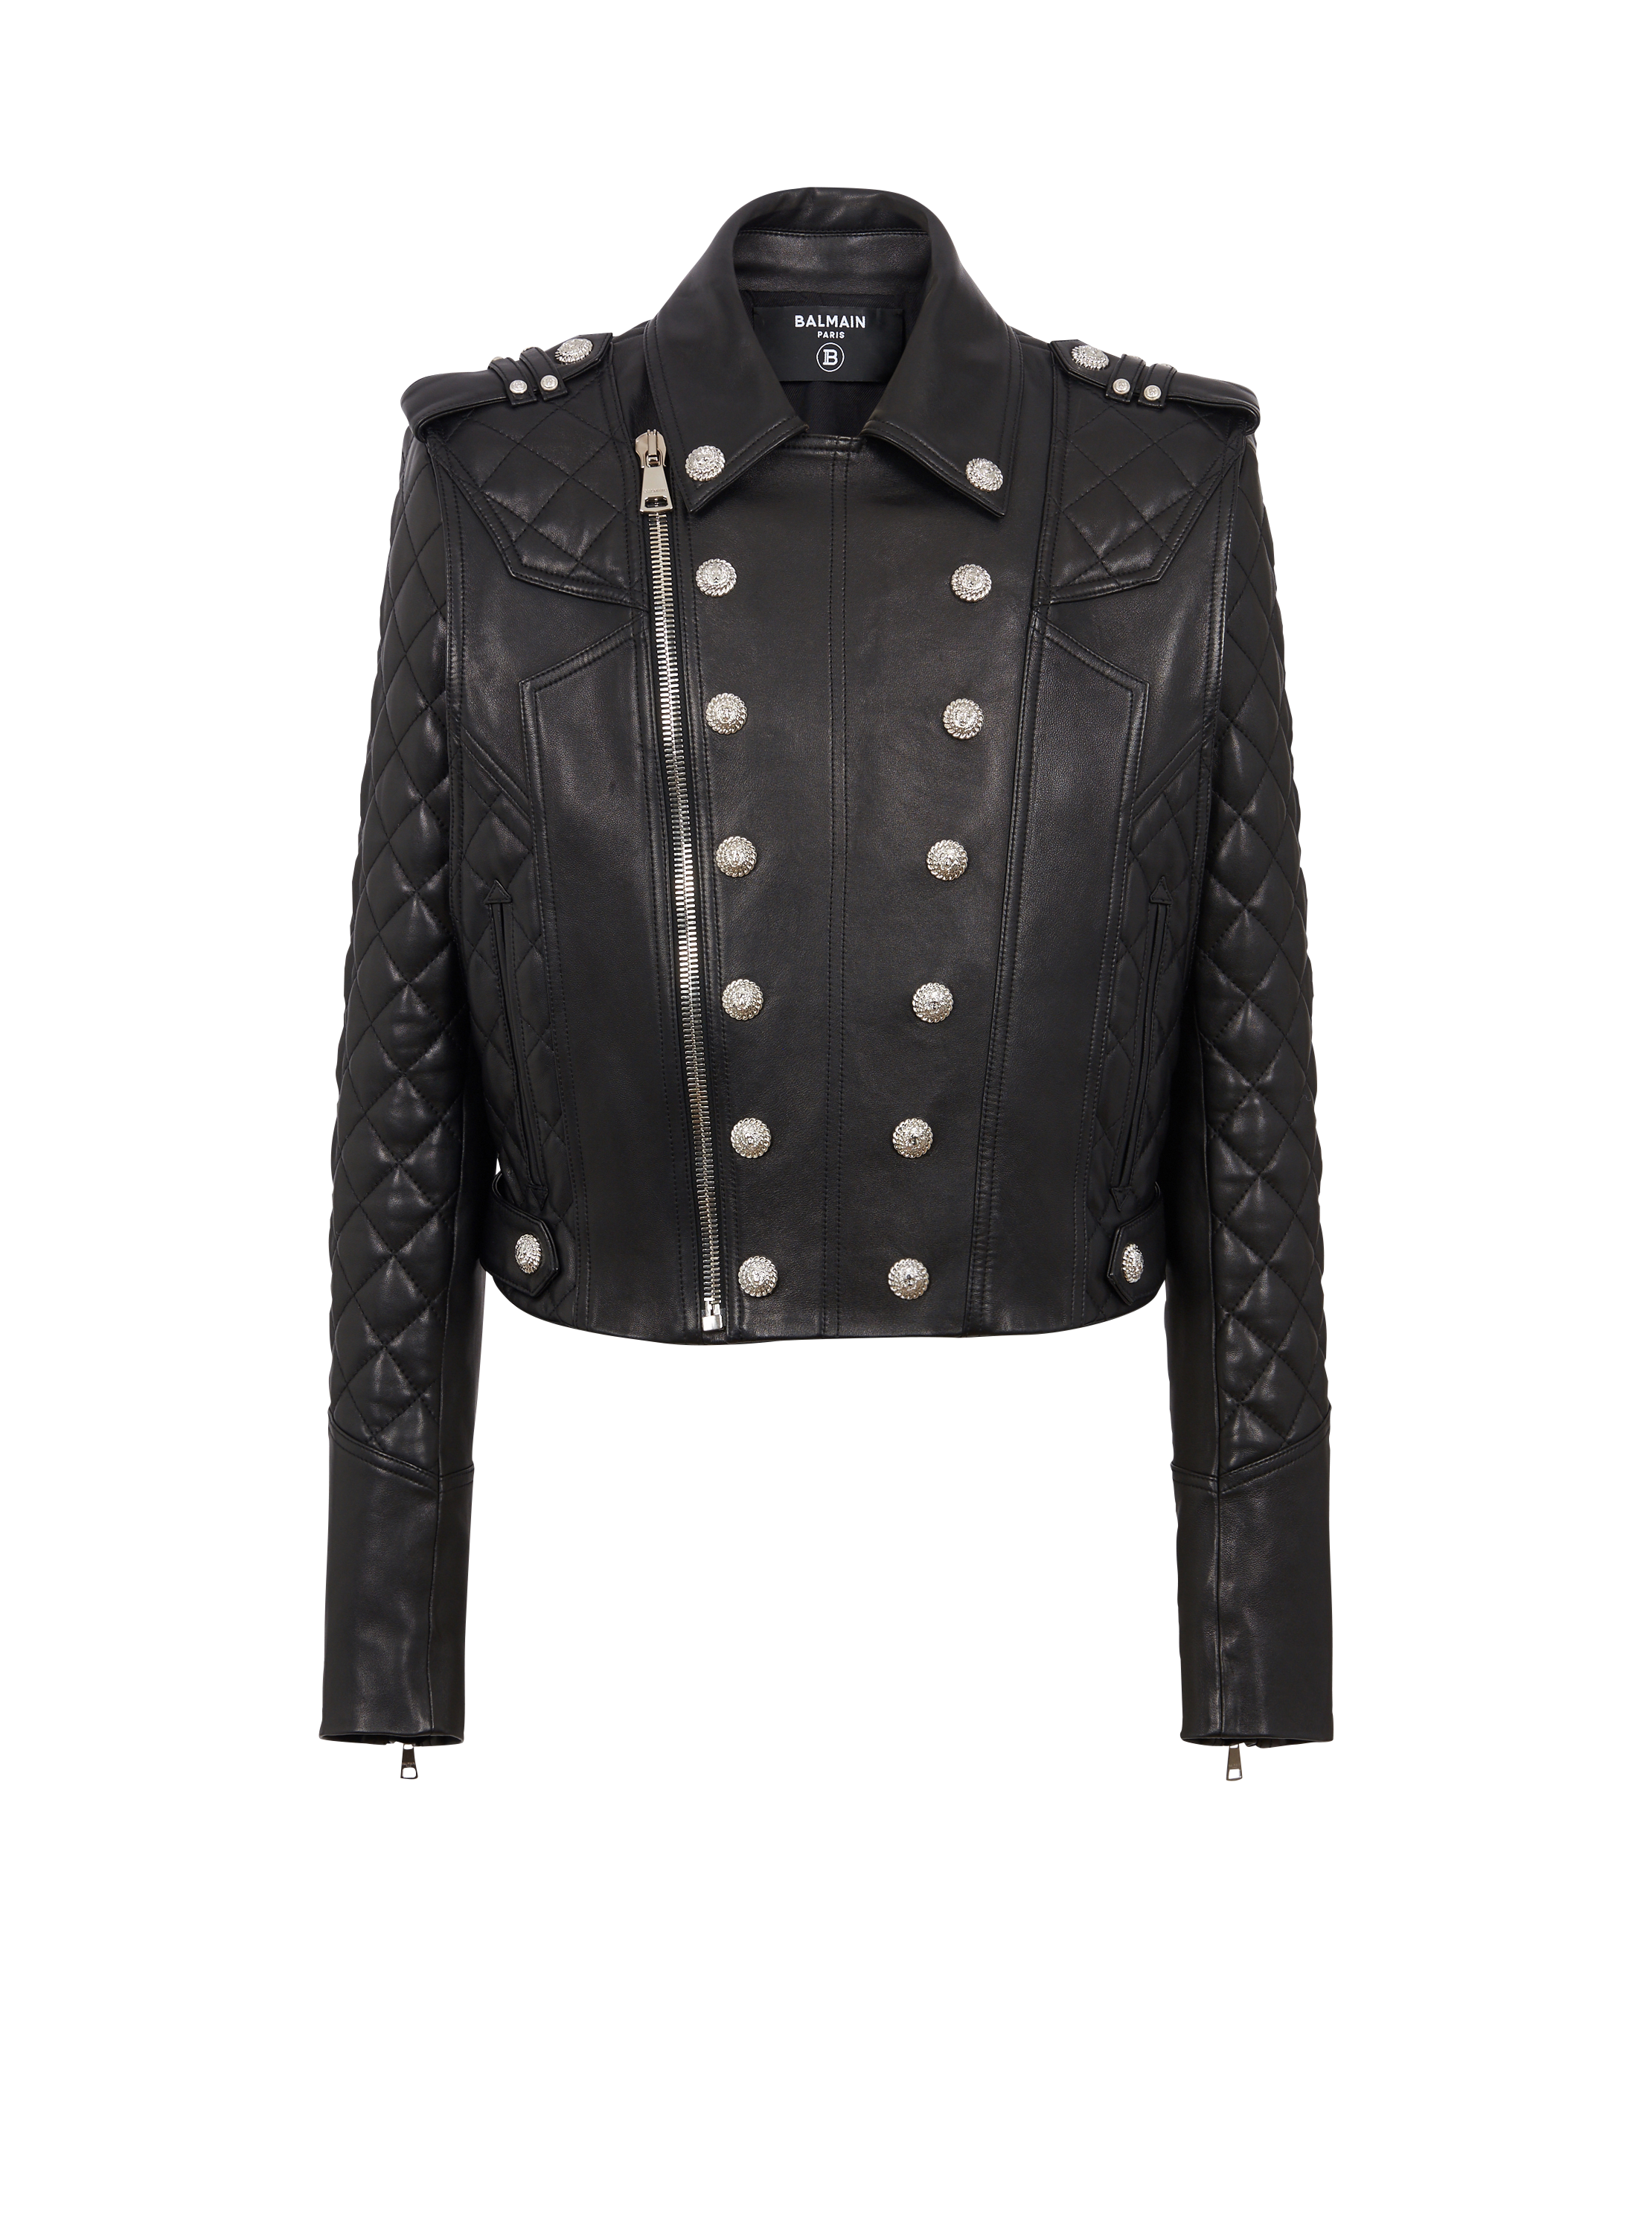 Quilted leather biker jacket, black, hi-res